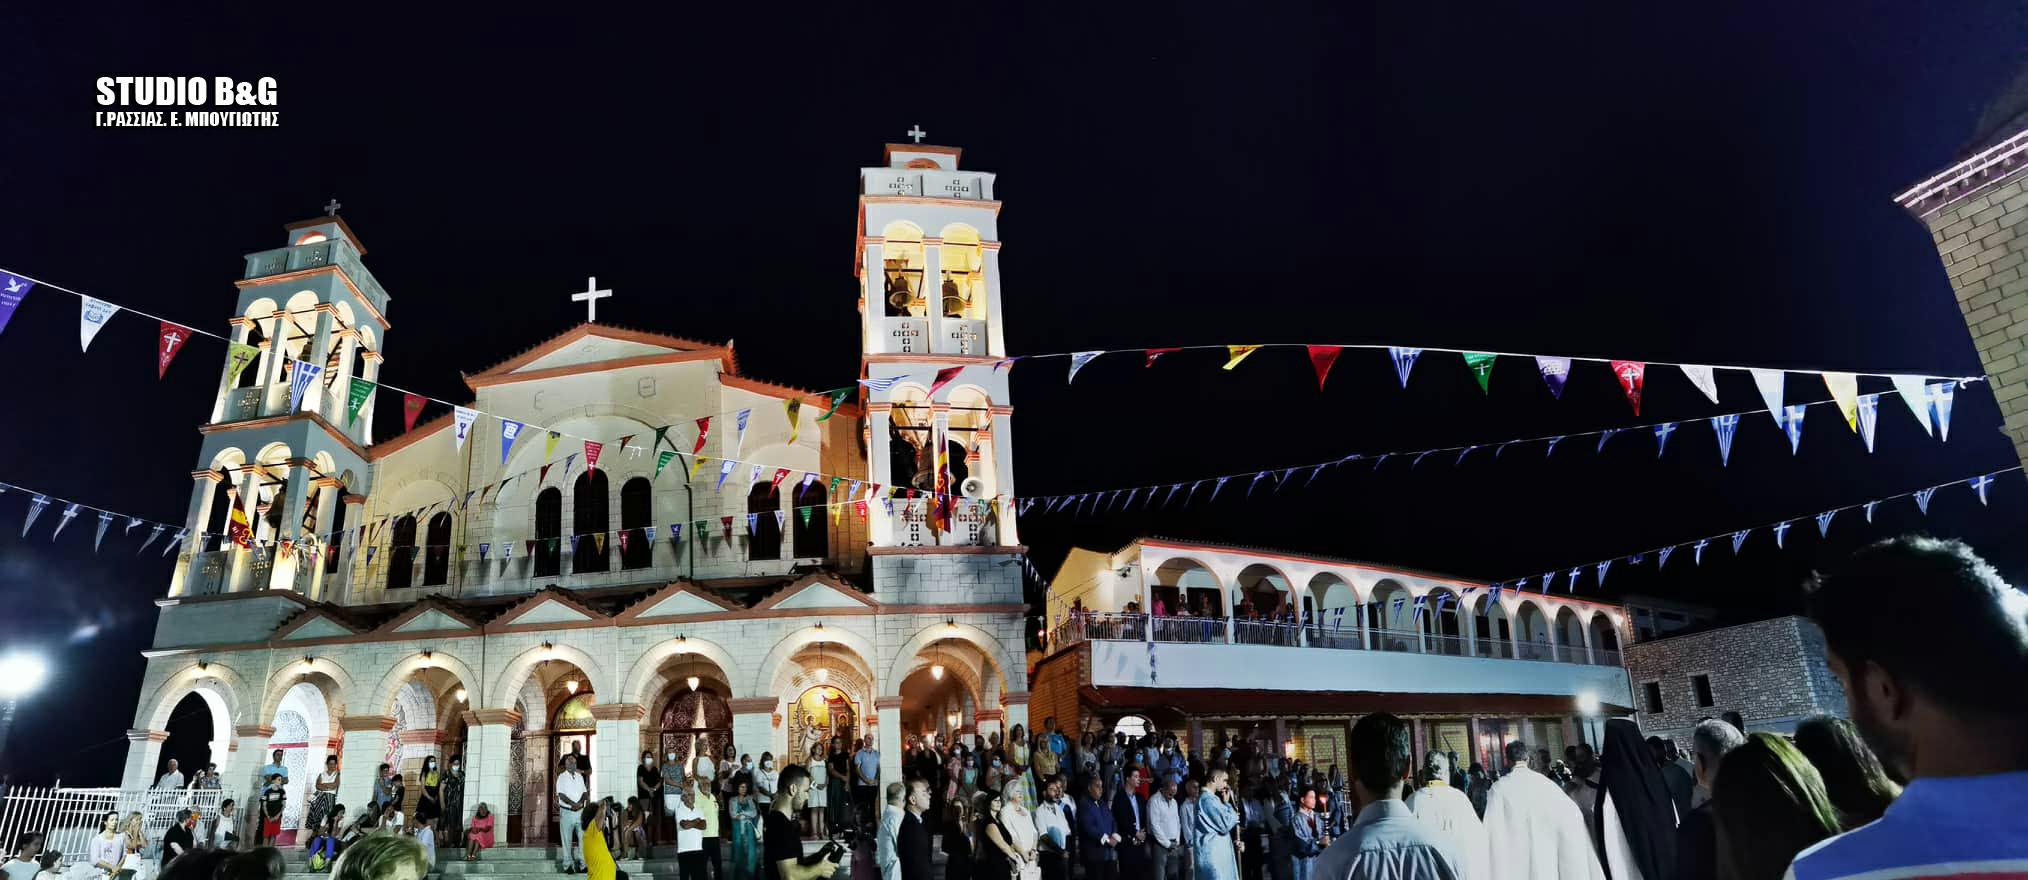 Εκατοντάδες Φανουρόπιτες στην Ευαγγελίστρια Ναυπλίου - Τάμα στον Άγιο Φανούριο